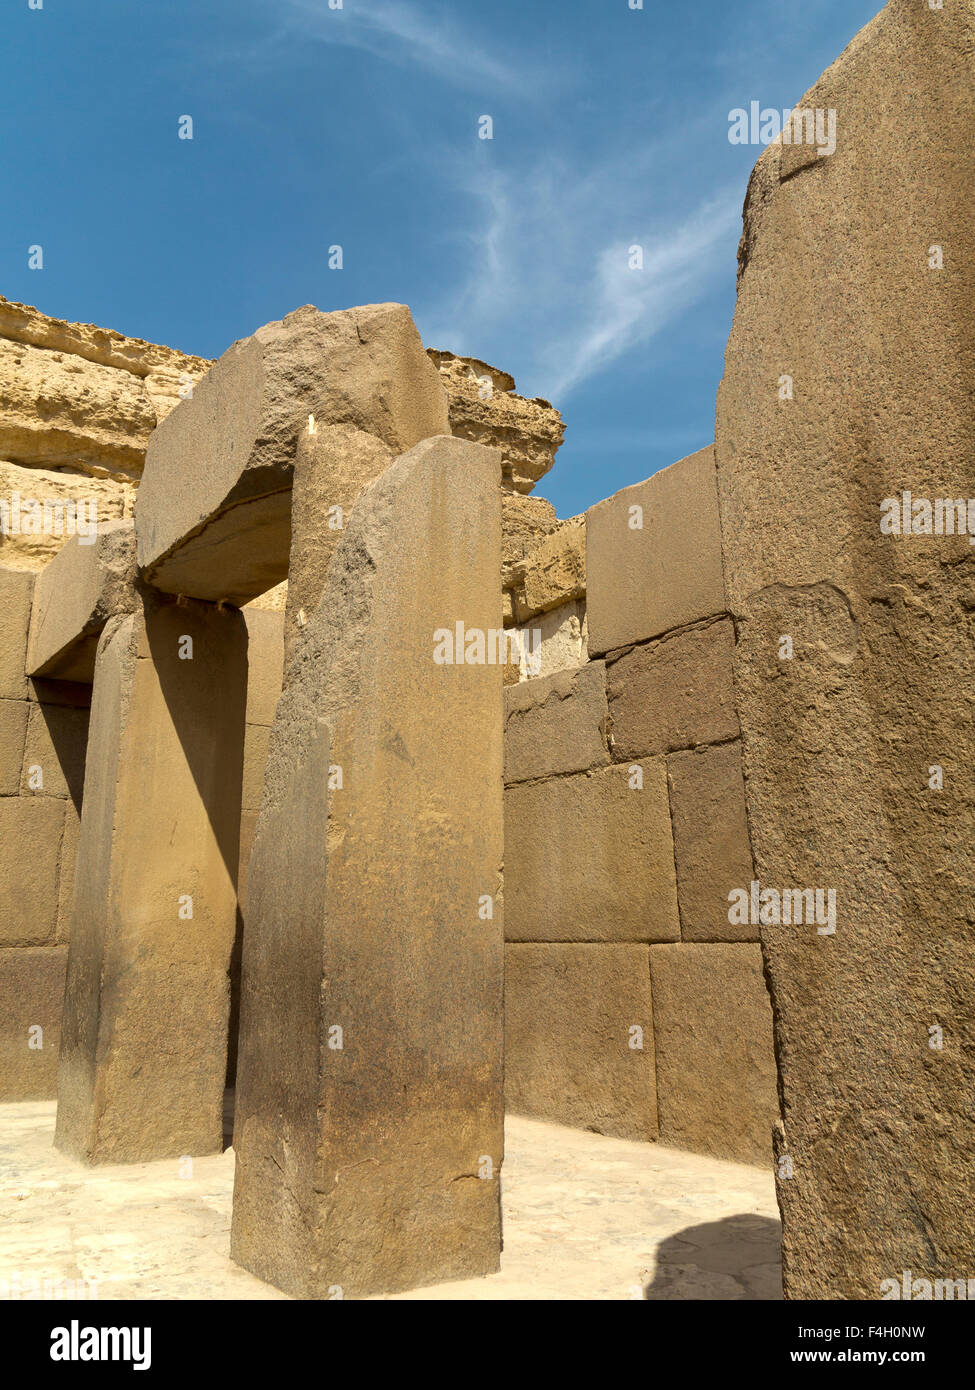 The Valley Temple of Pharaoh Khafre of the 4th Dynasty, Giza, near Cairo Egypt Stock Photo